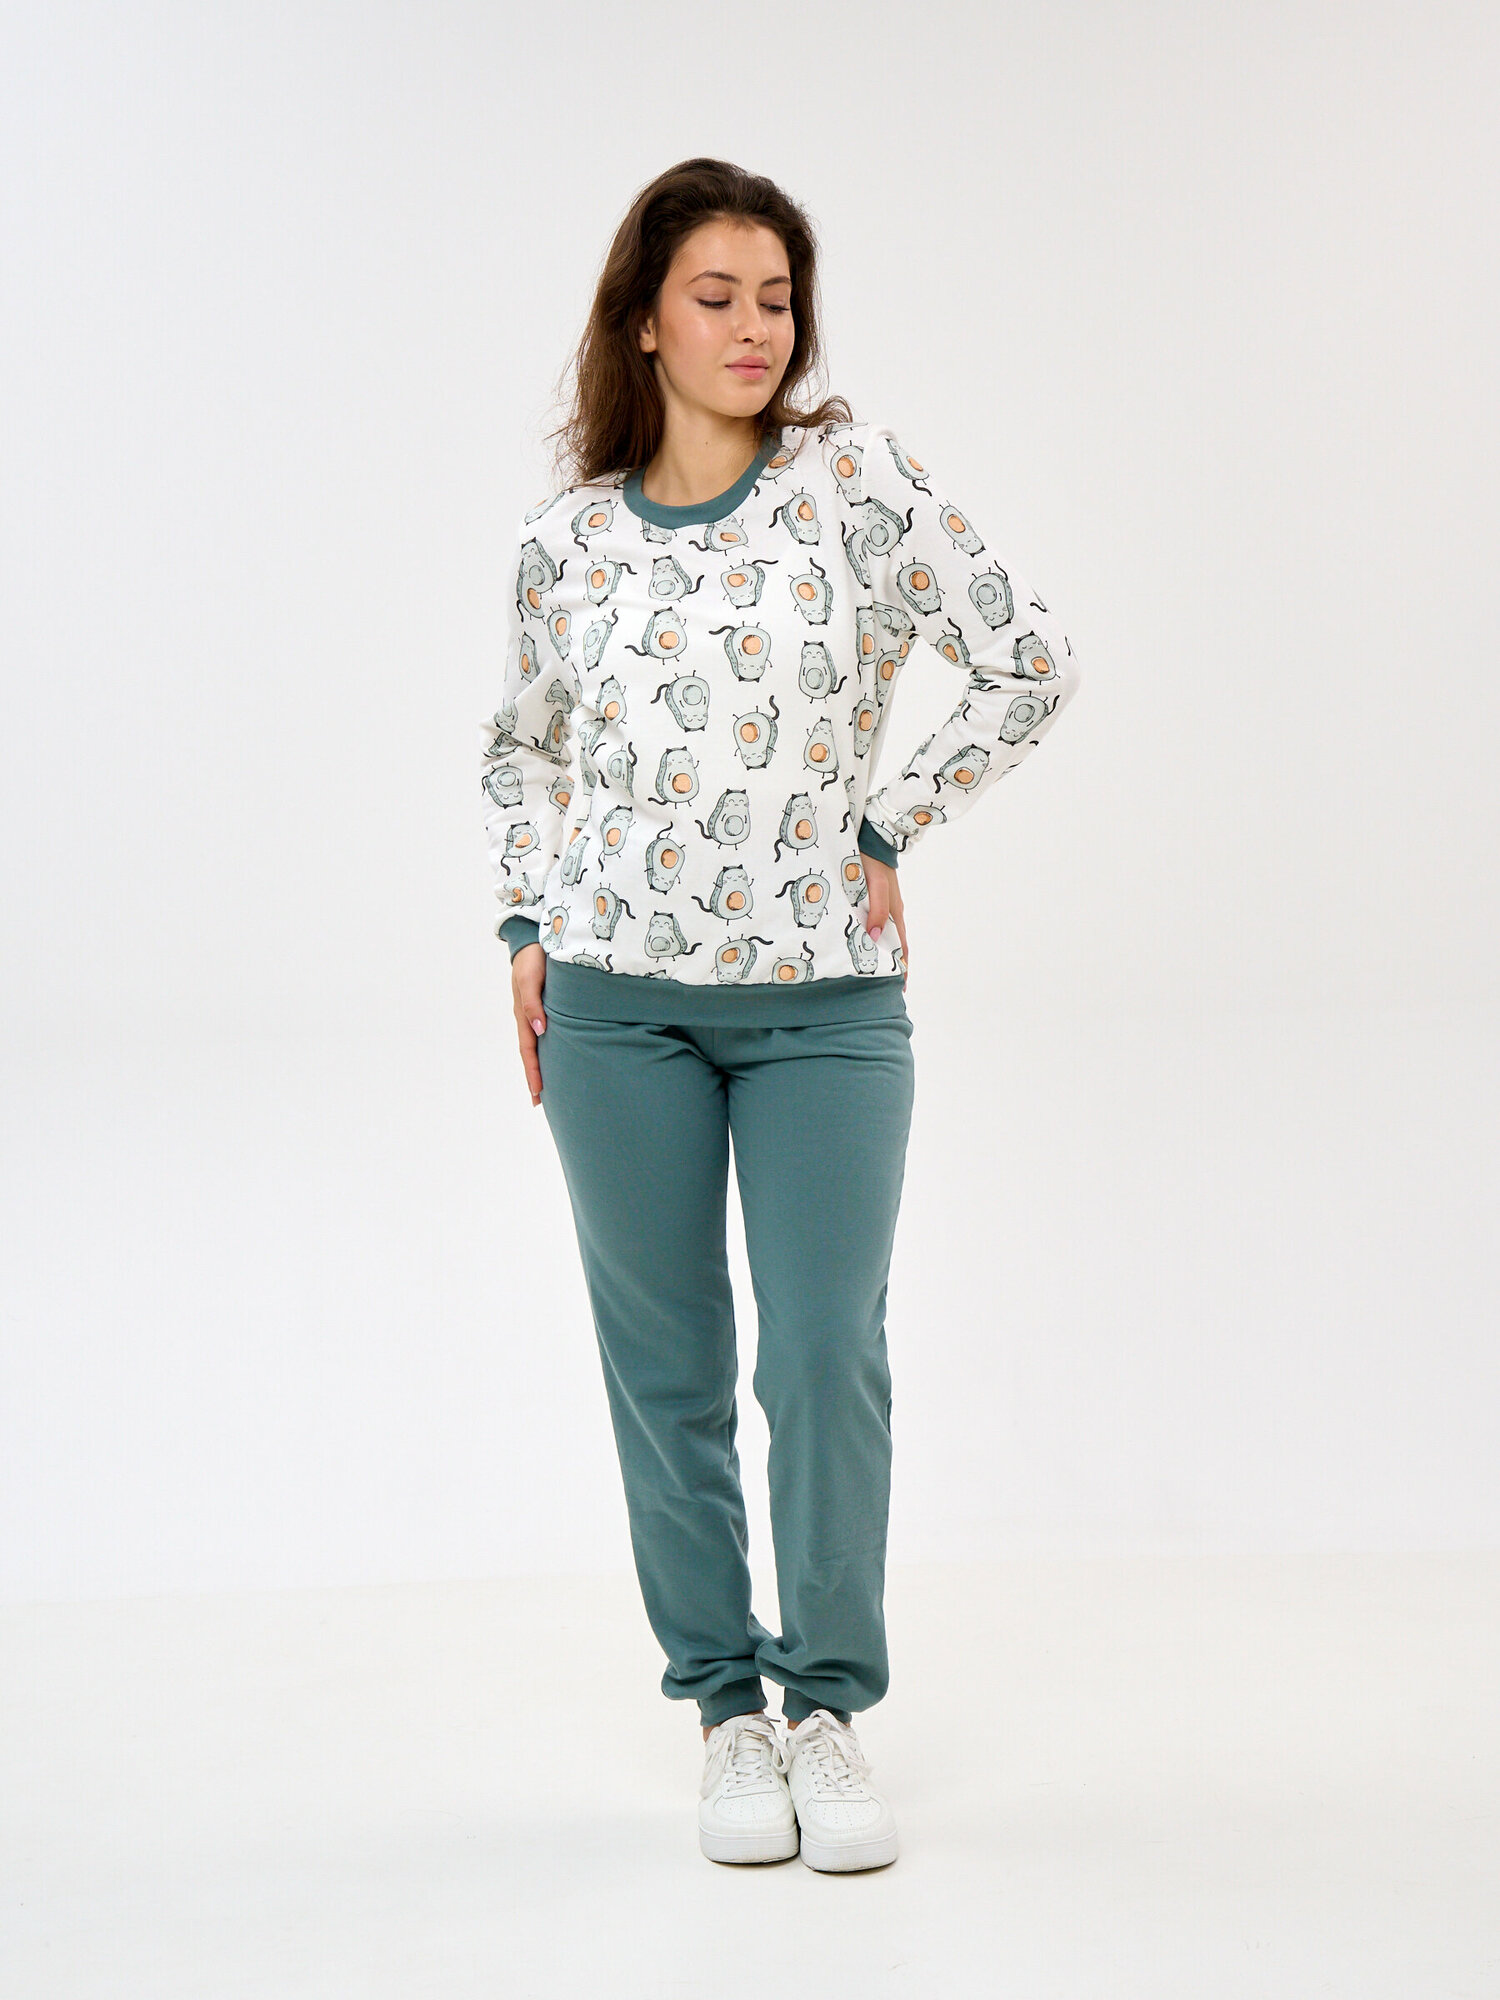 Пижама Монотекс, размер 46, белый, зеленый - фотография № 4